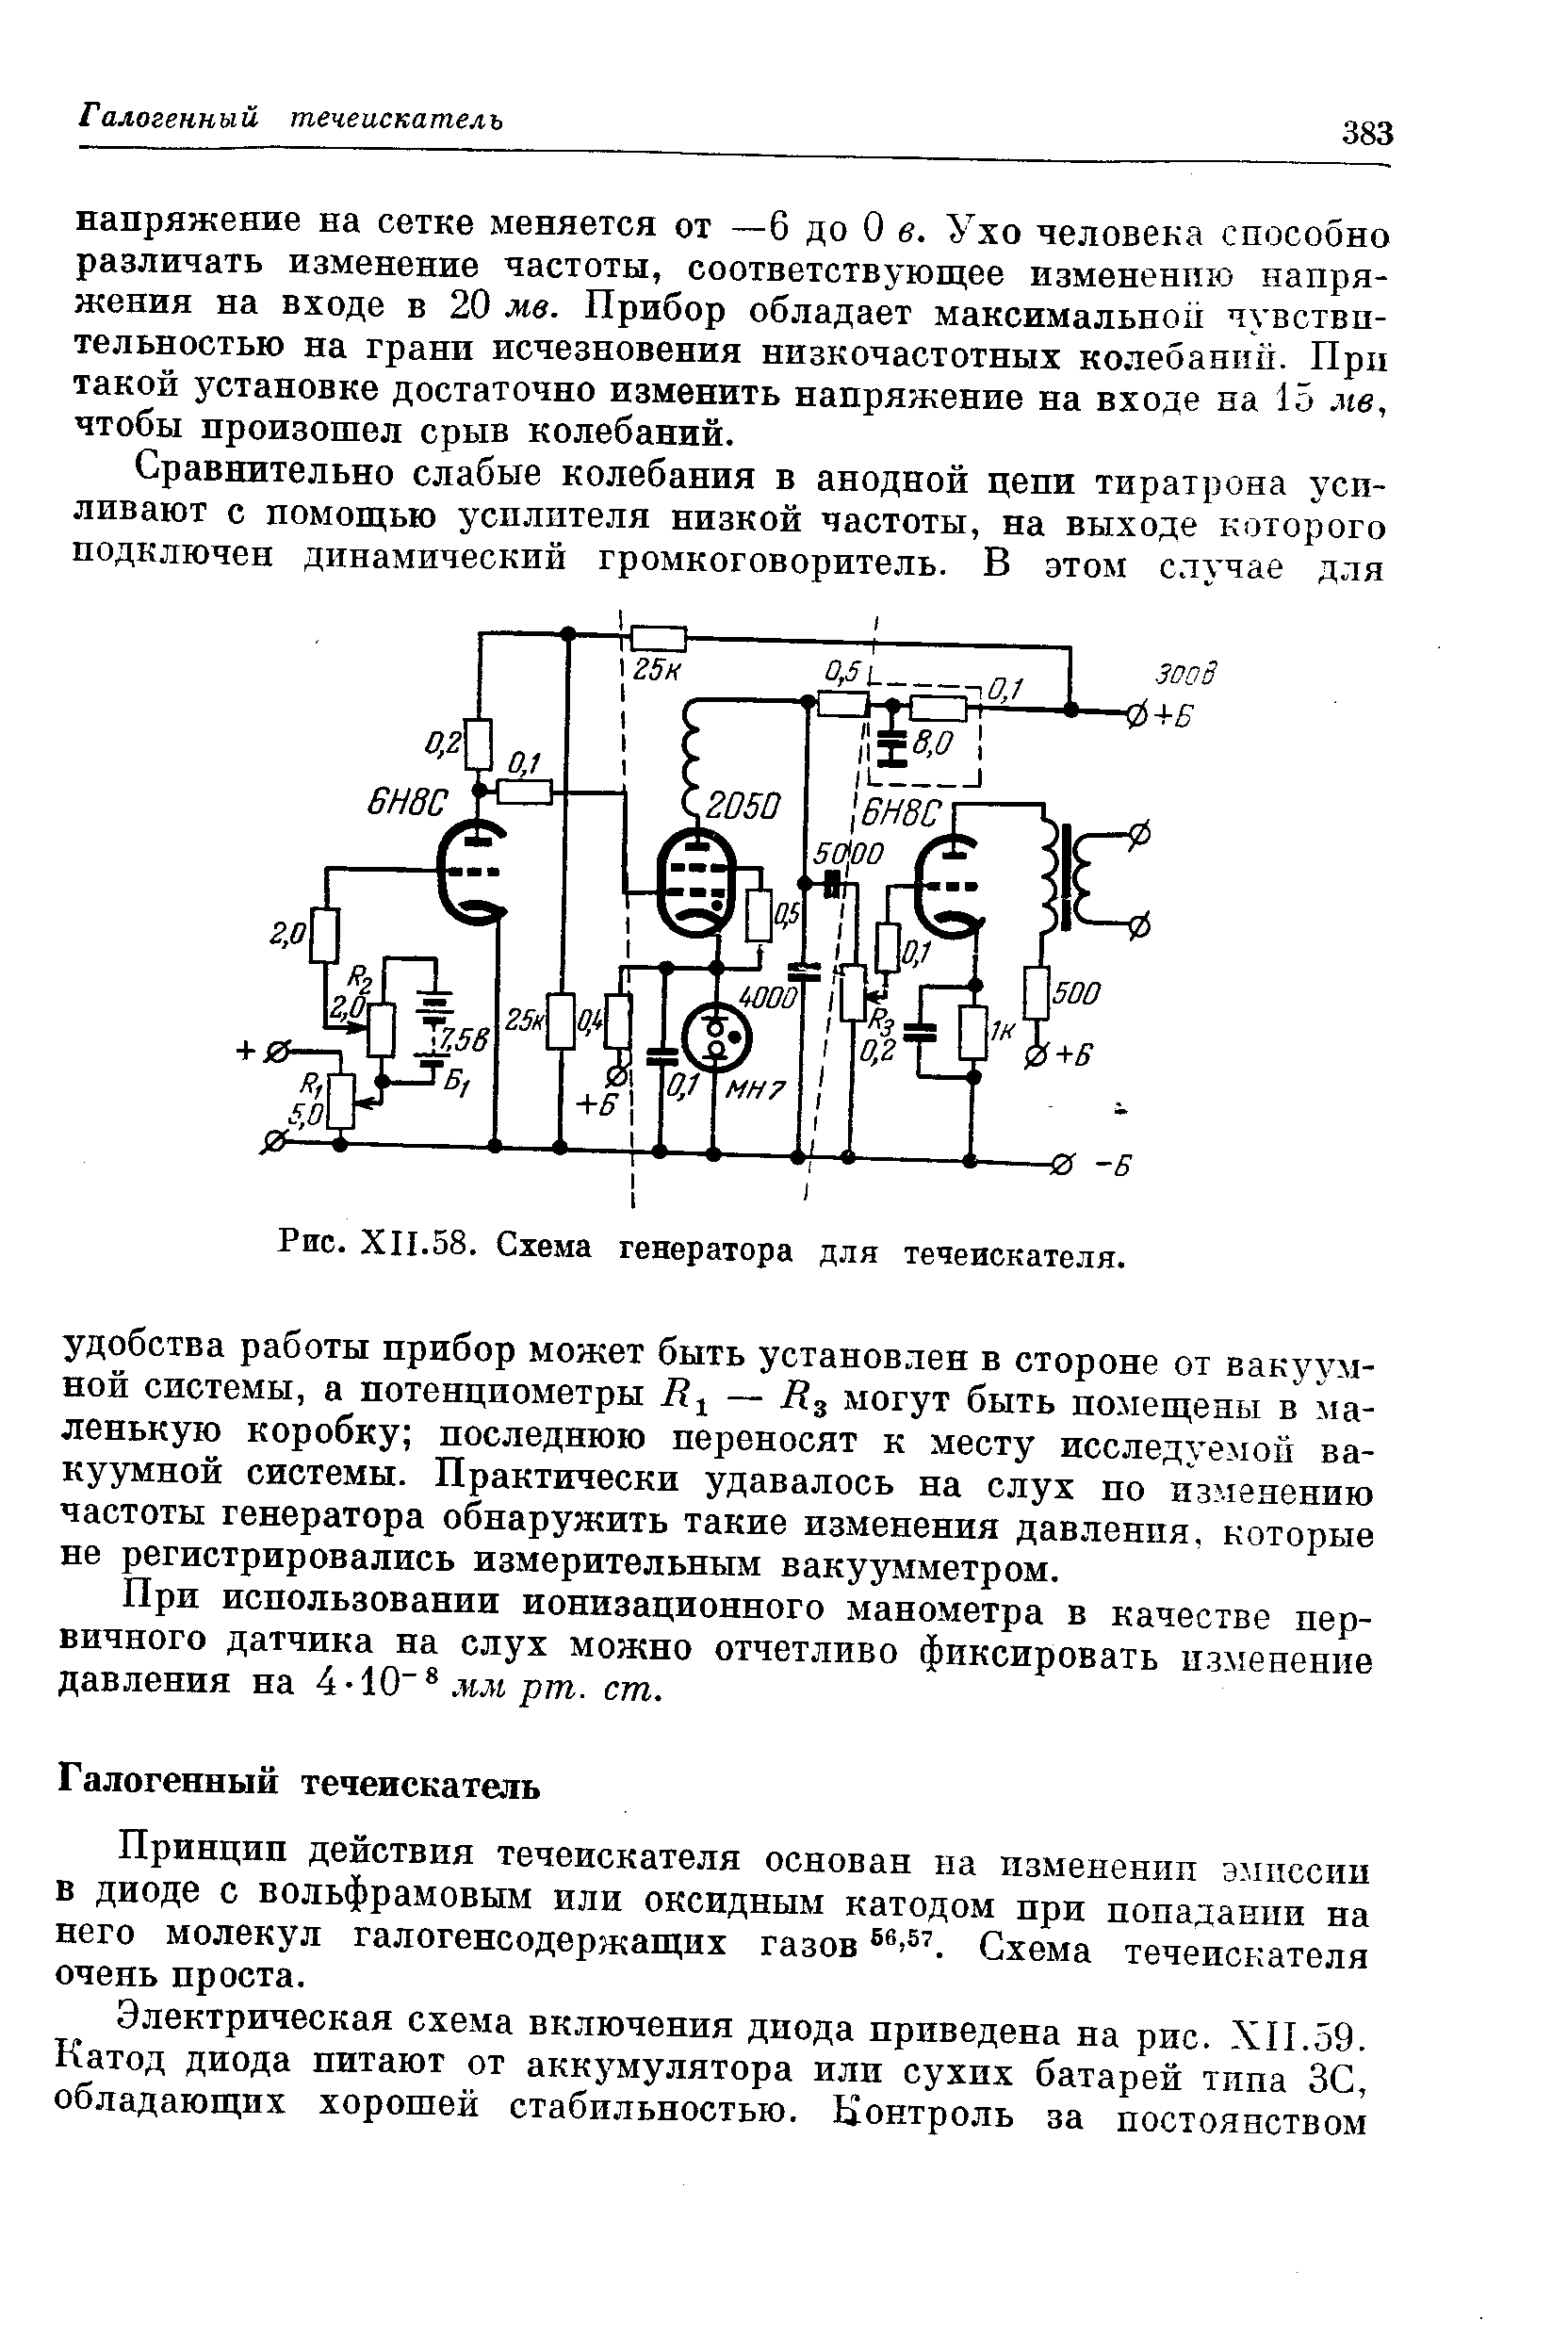 Схема генератора для течеискателя.